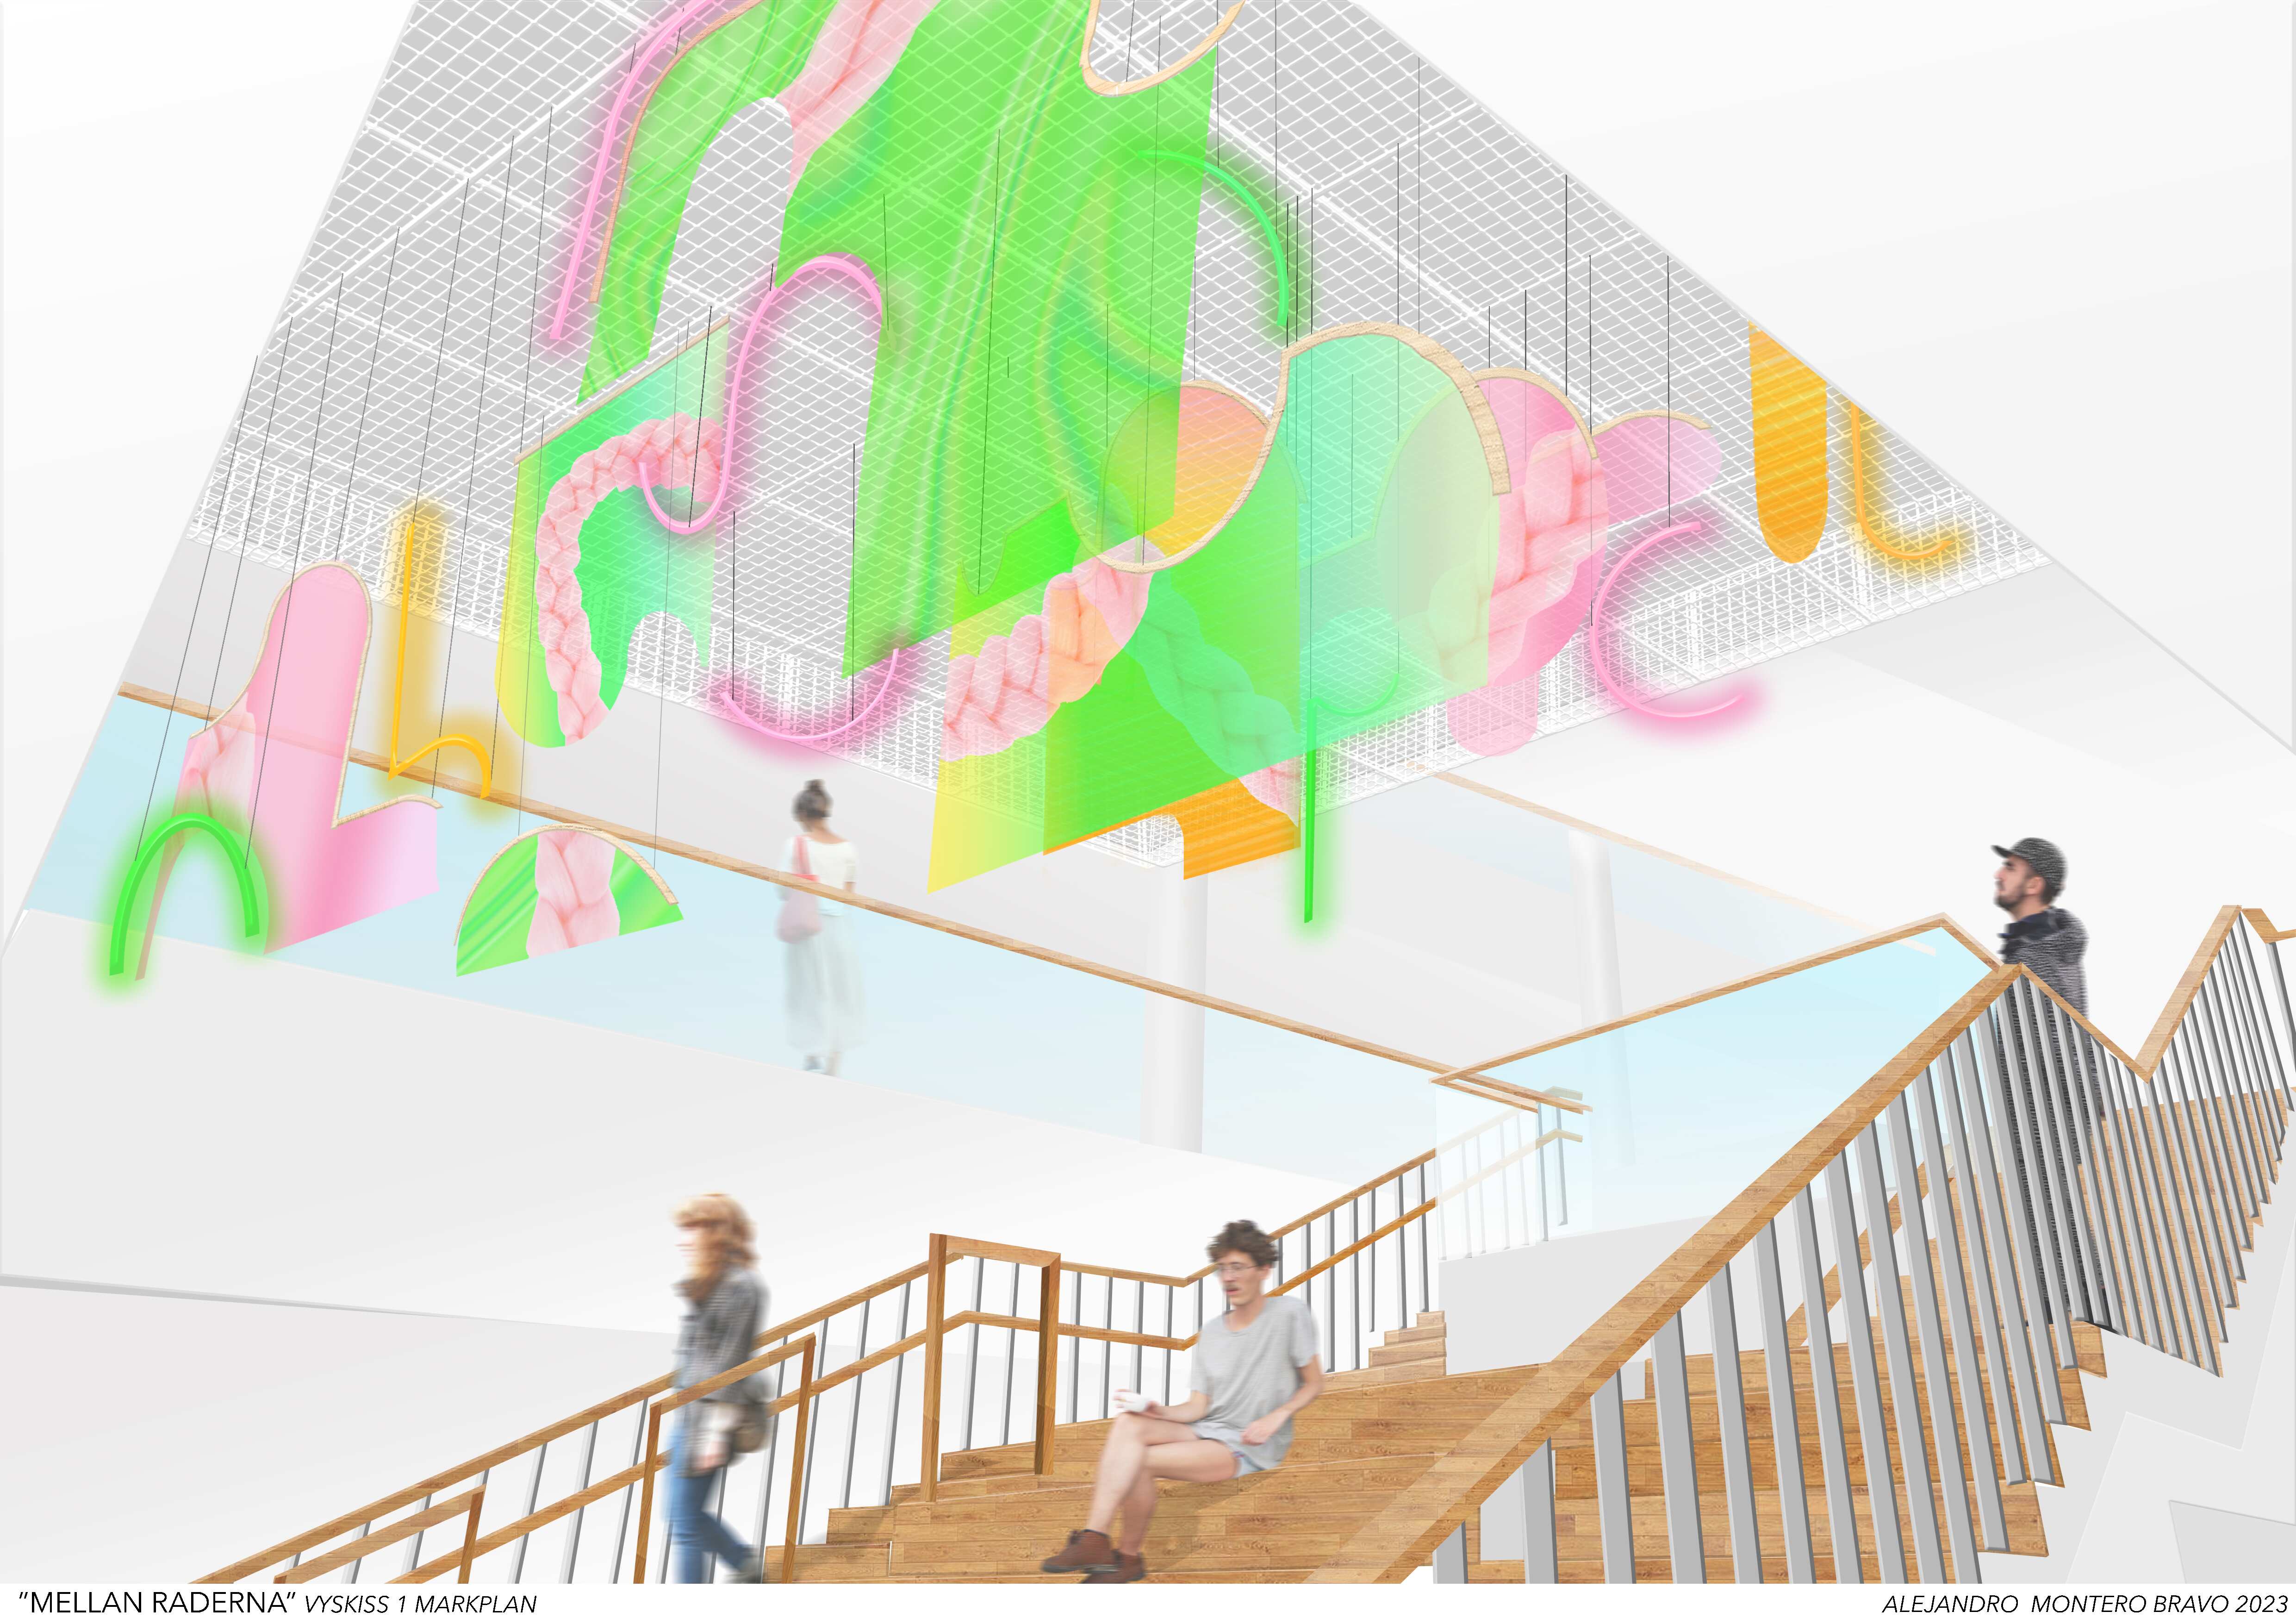 En skiss på en gradängtrappa vari det sitter, står och går personer. Över tappan hänger ett skirt konstverk. Konsten består av olika former i rosa, ljusgrönt och gult. 